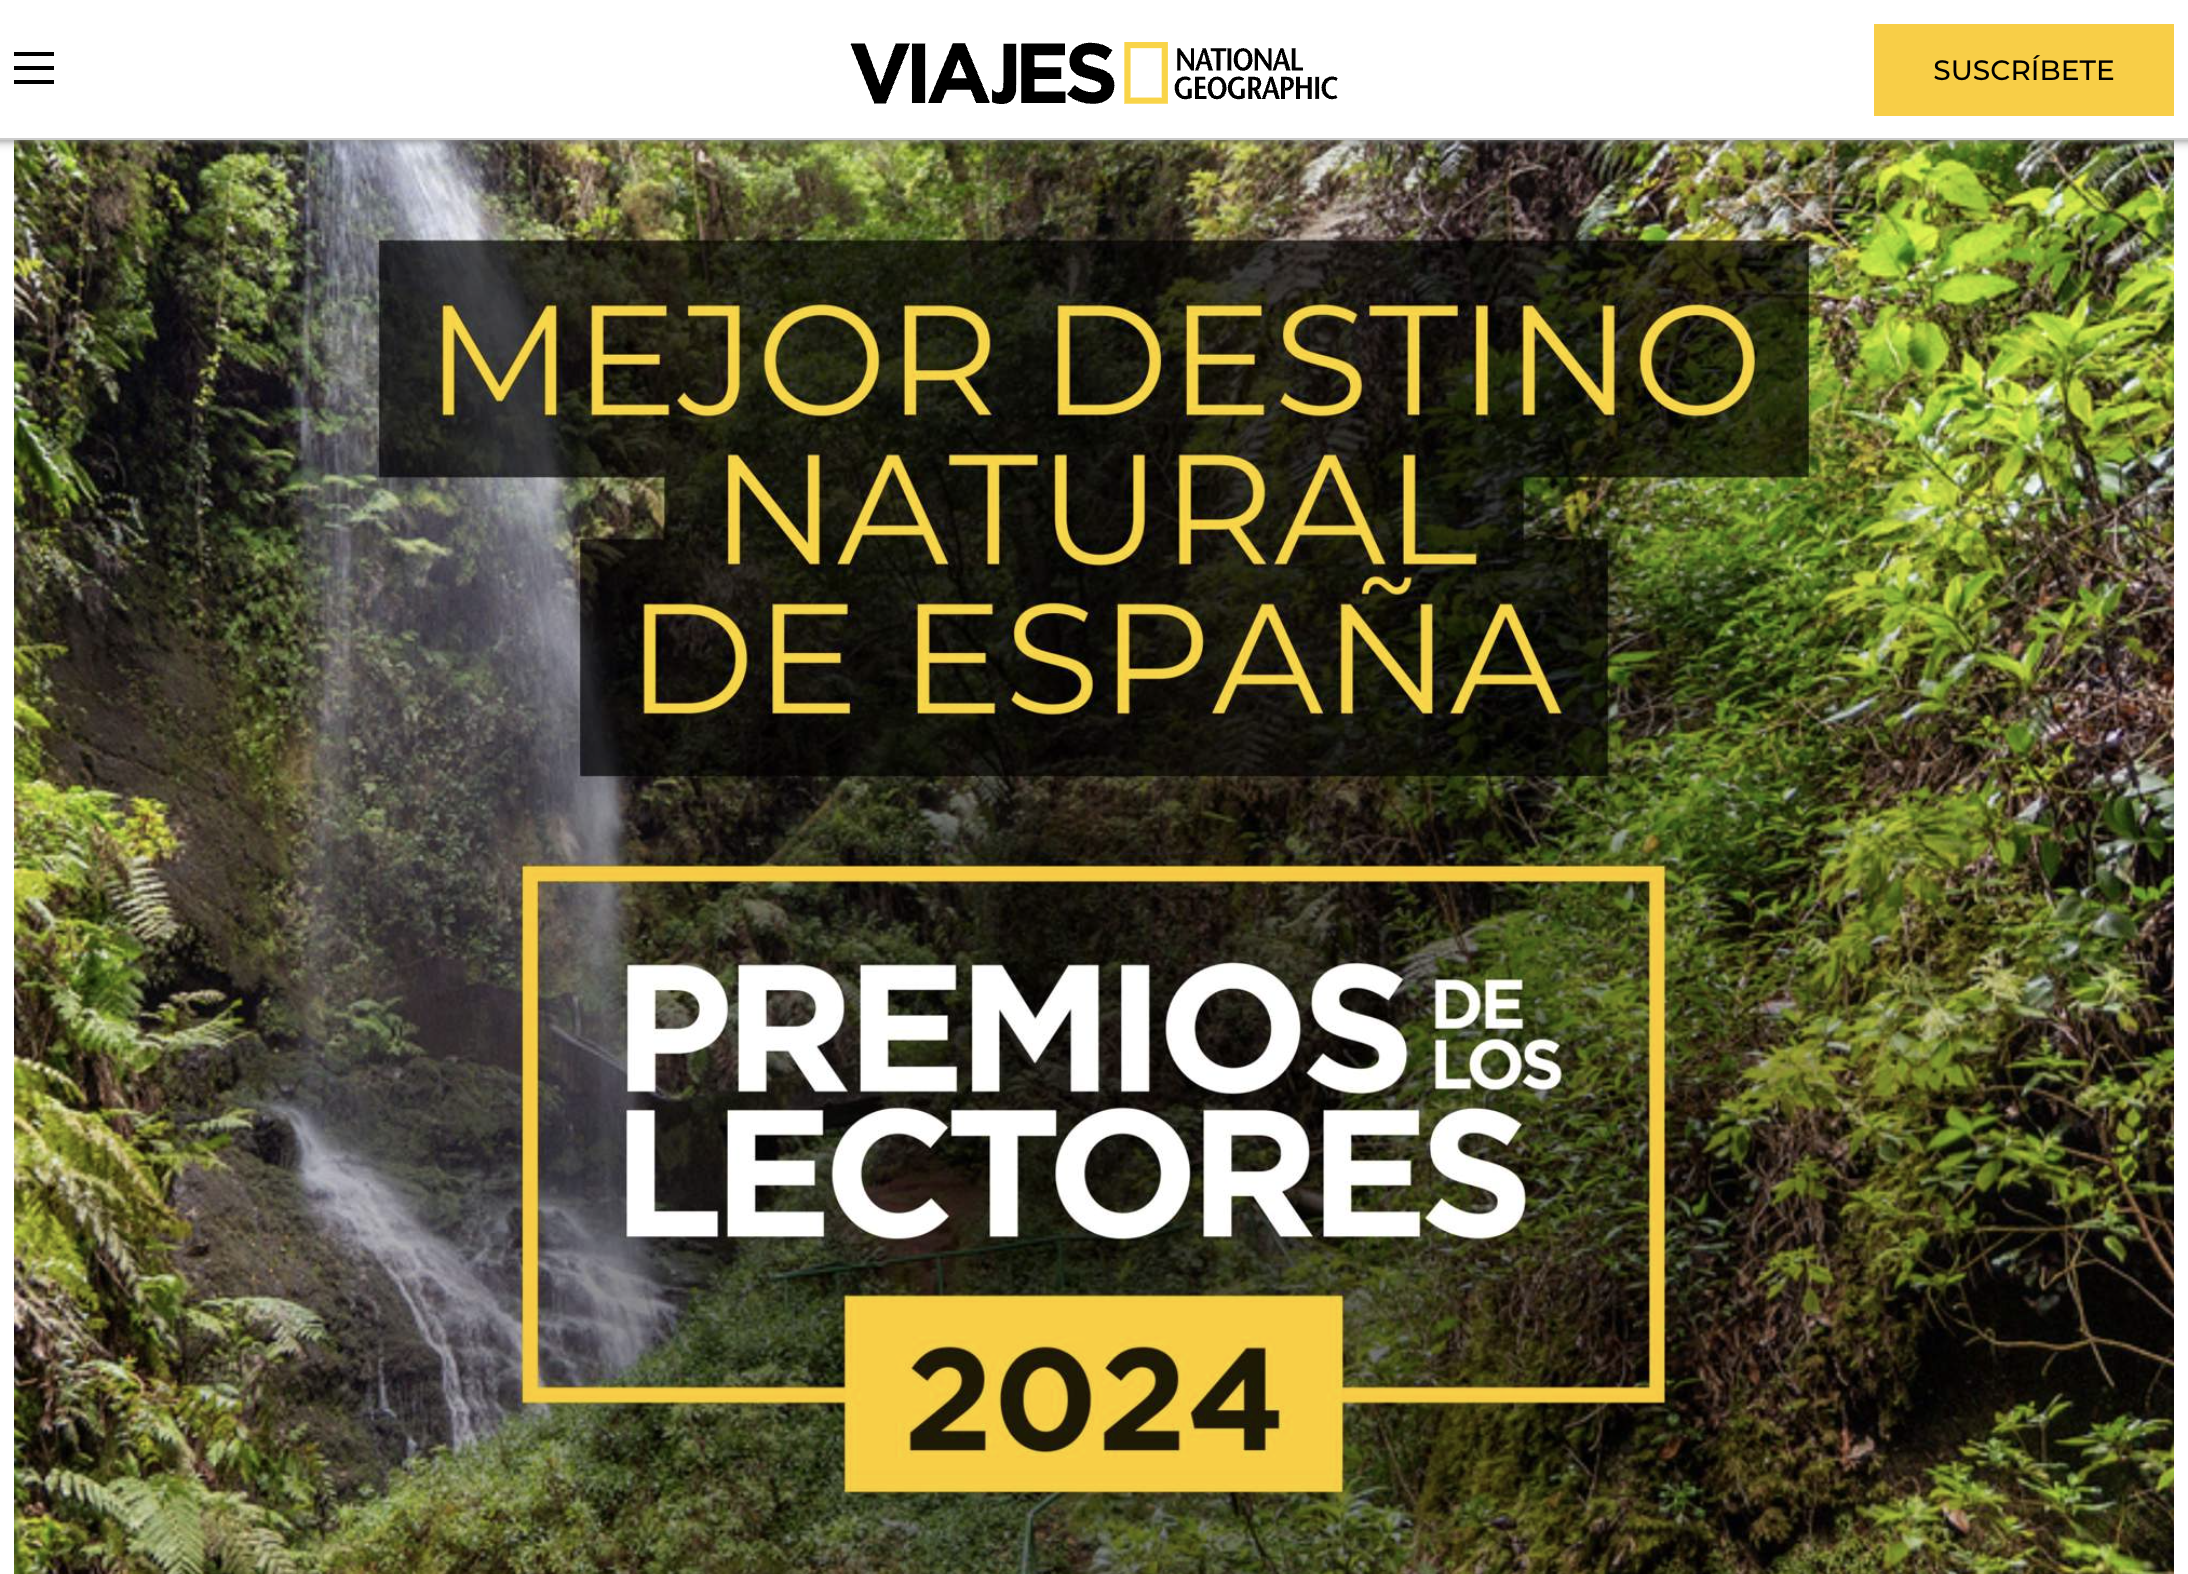 La Selva de Irati finalista al premio mejor destino natural de España de los “Premios de los Lectores de Viajes National Geographic 2024”